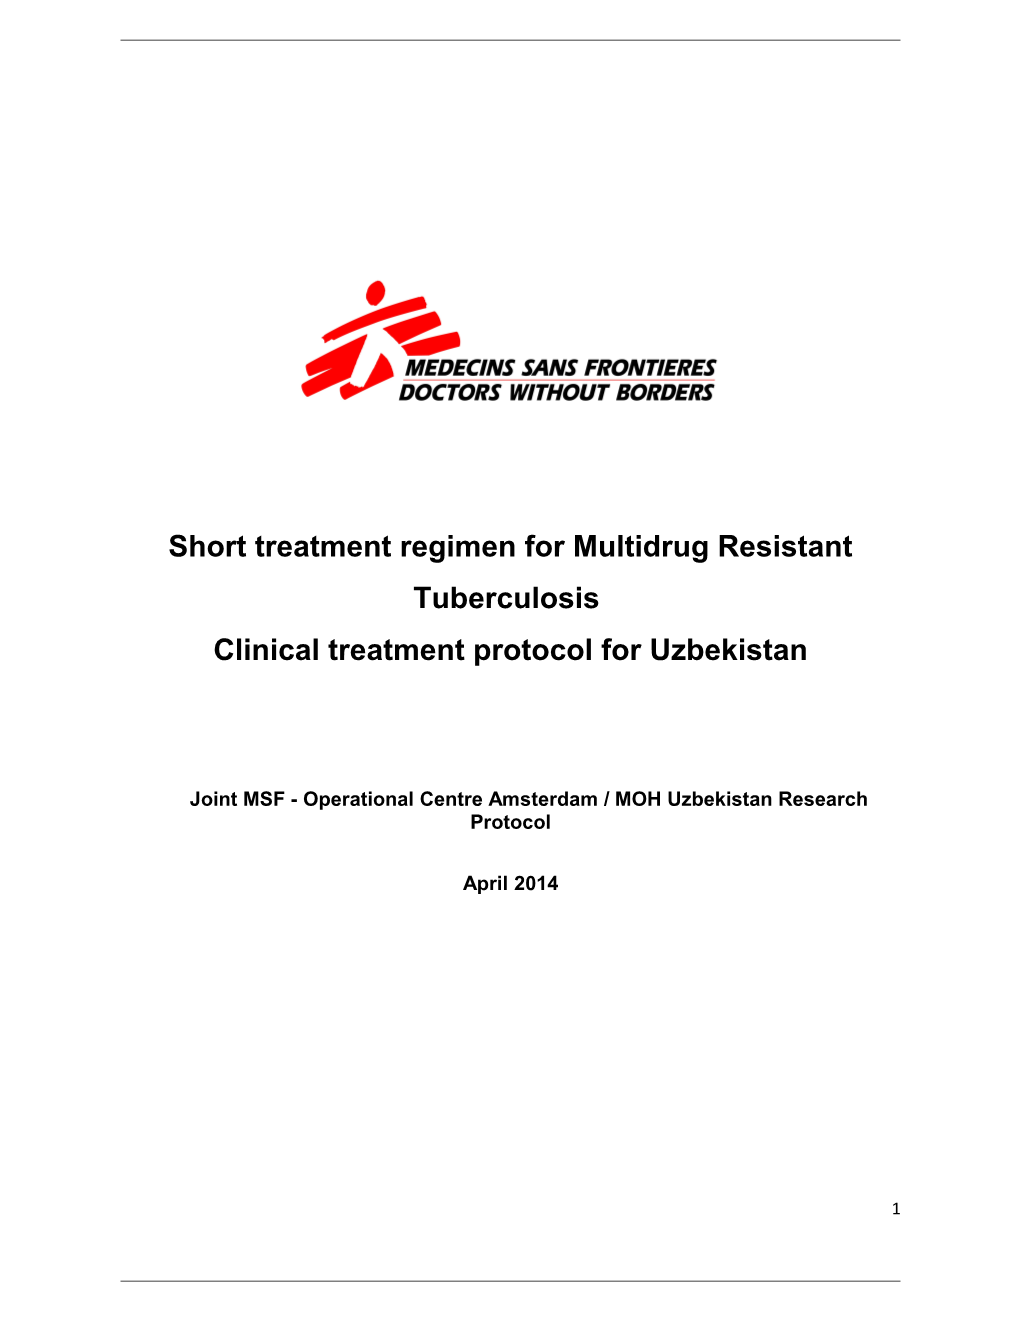 Short Treatment Regimen for Multidrug Resistant Tuberculosis